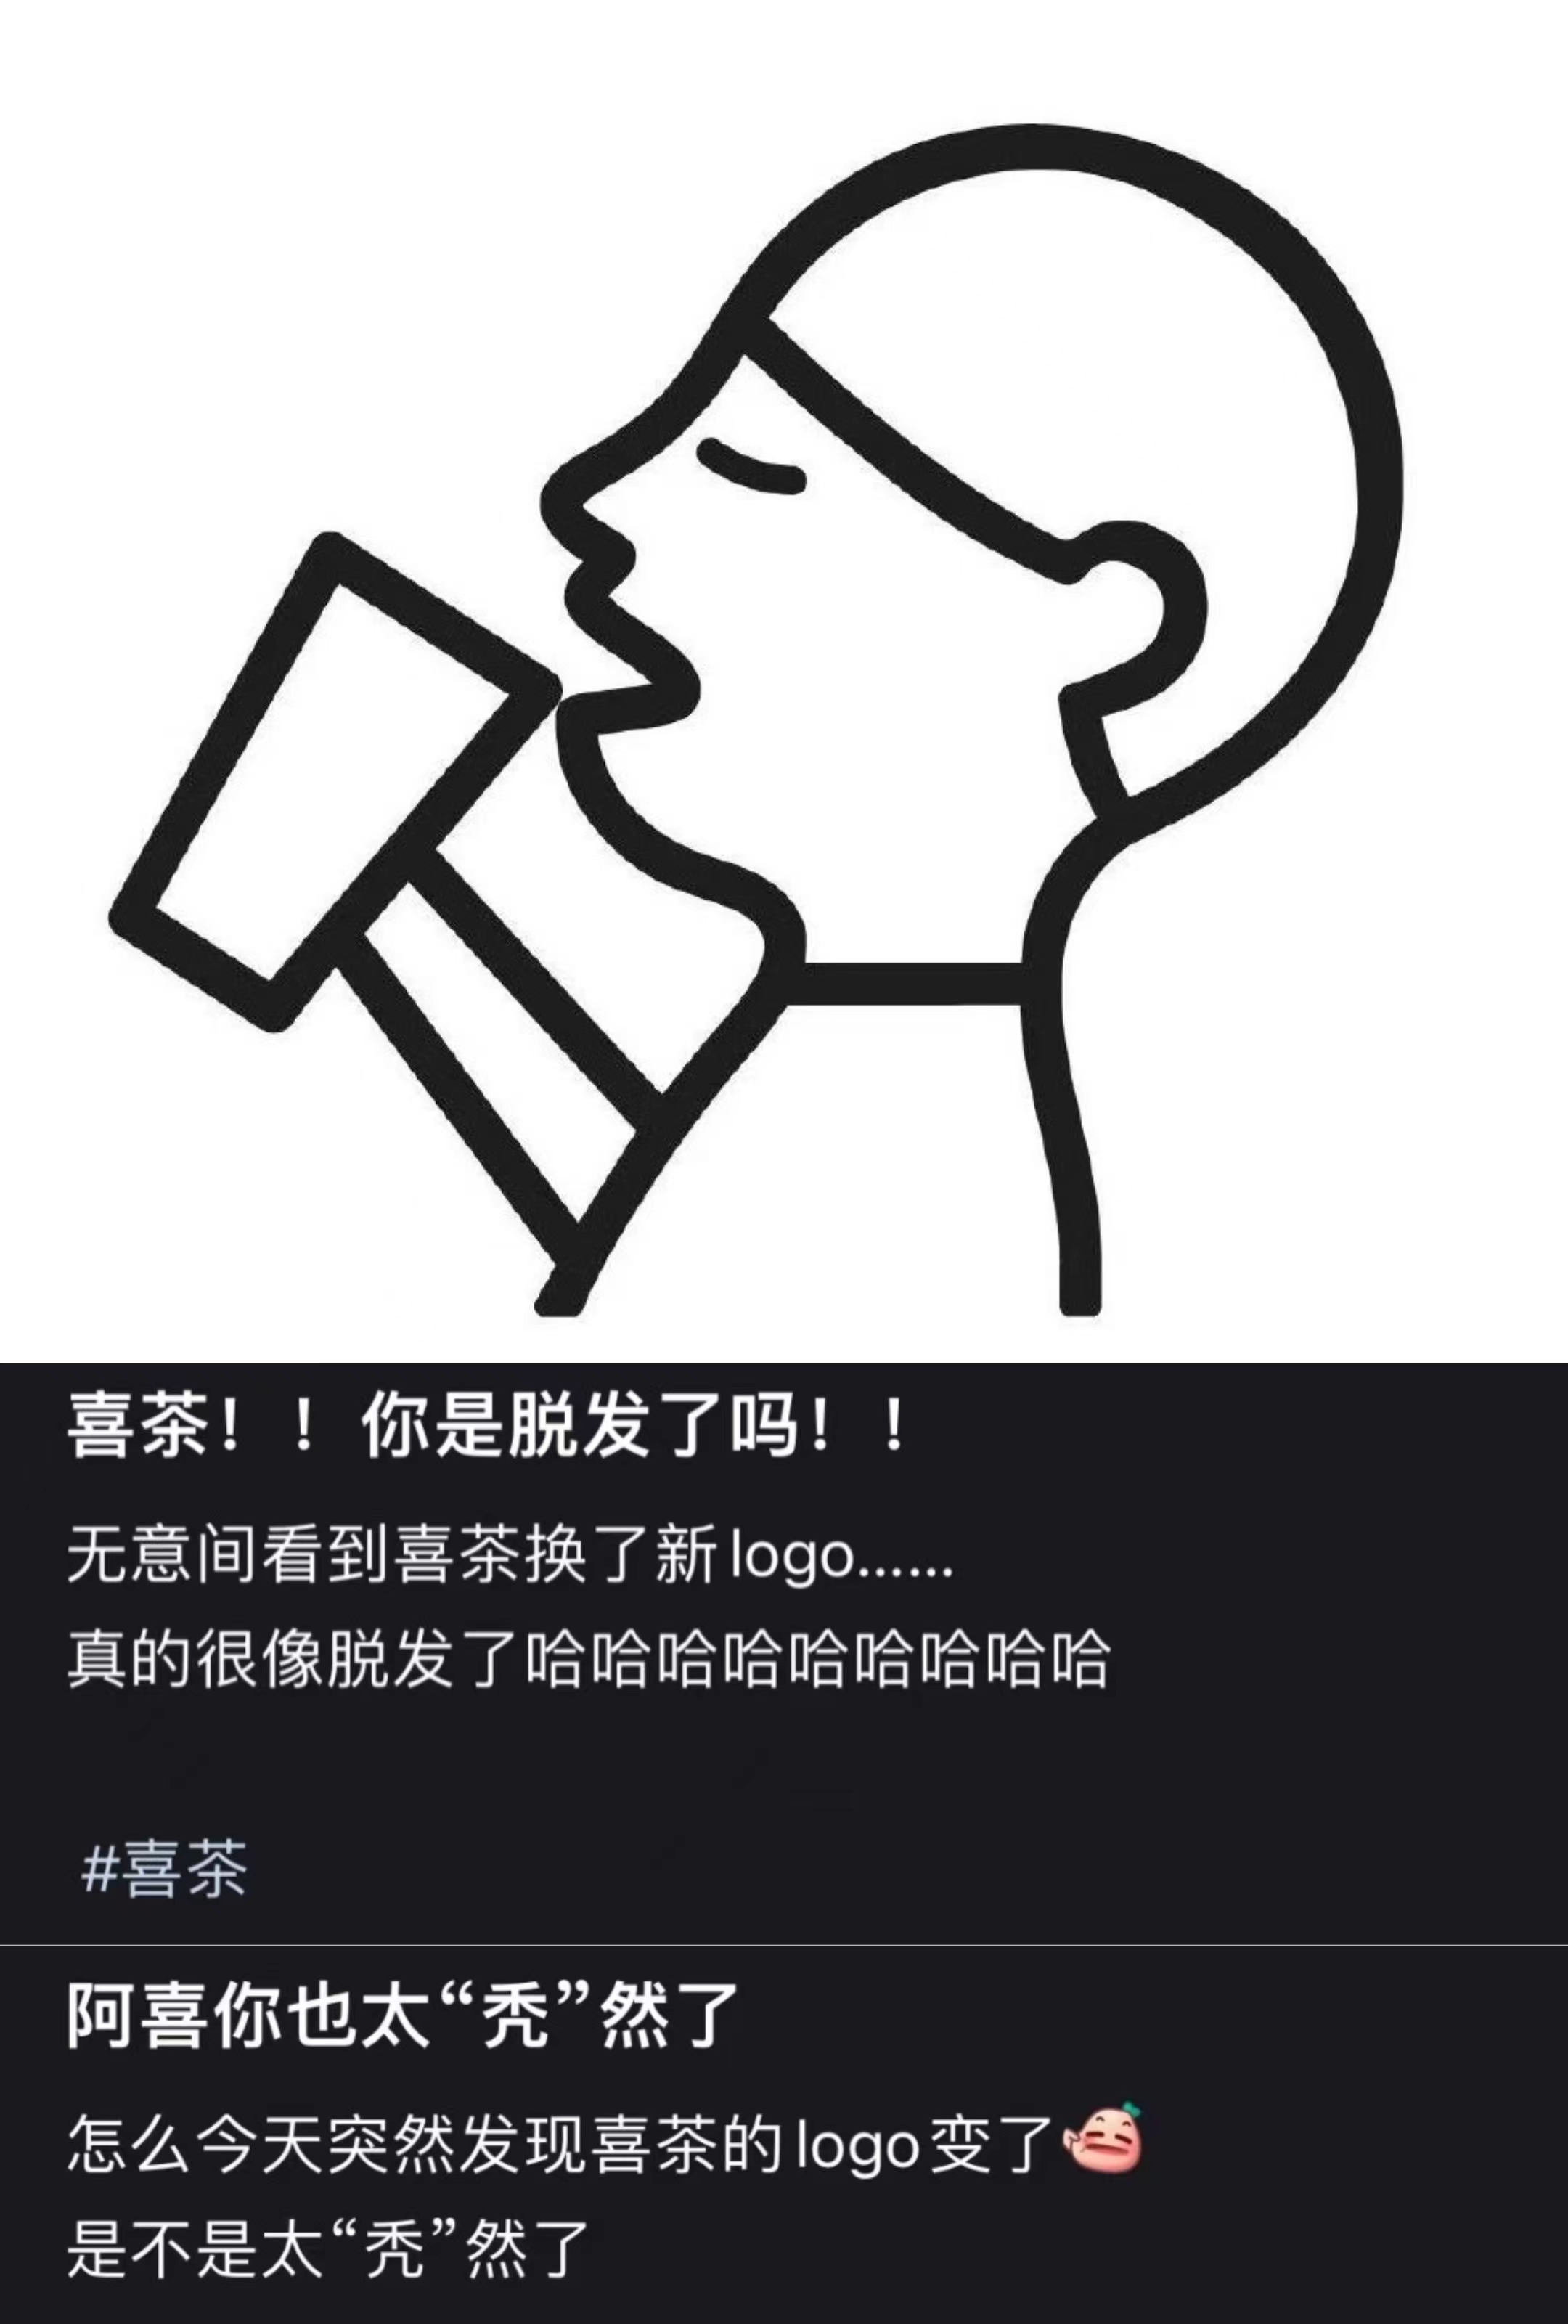 喜茶logo设计理念 最新logo什么样 喜茶logo谁设计的 演变过程